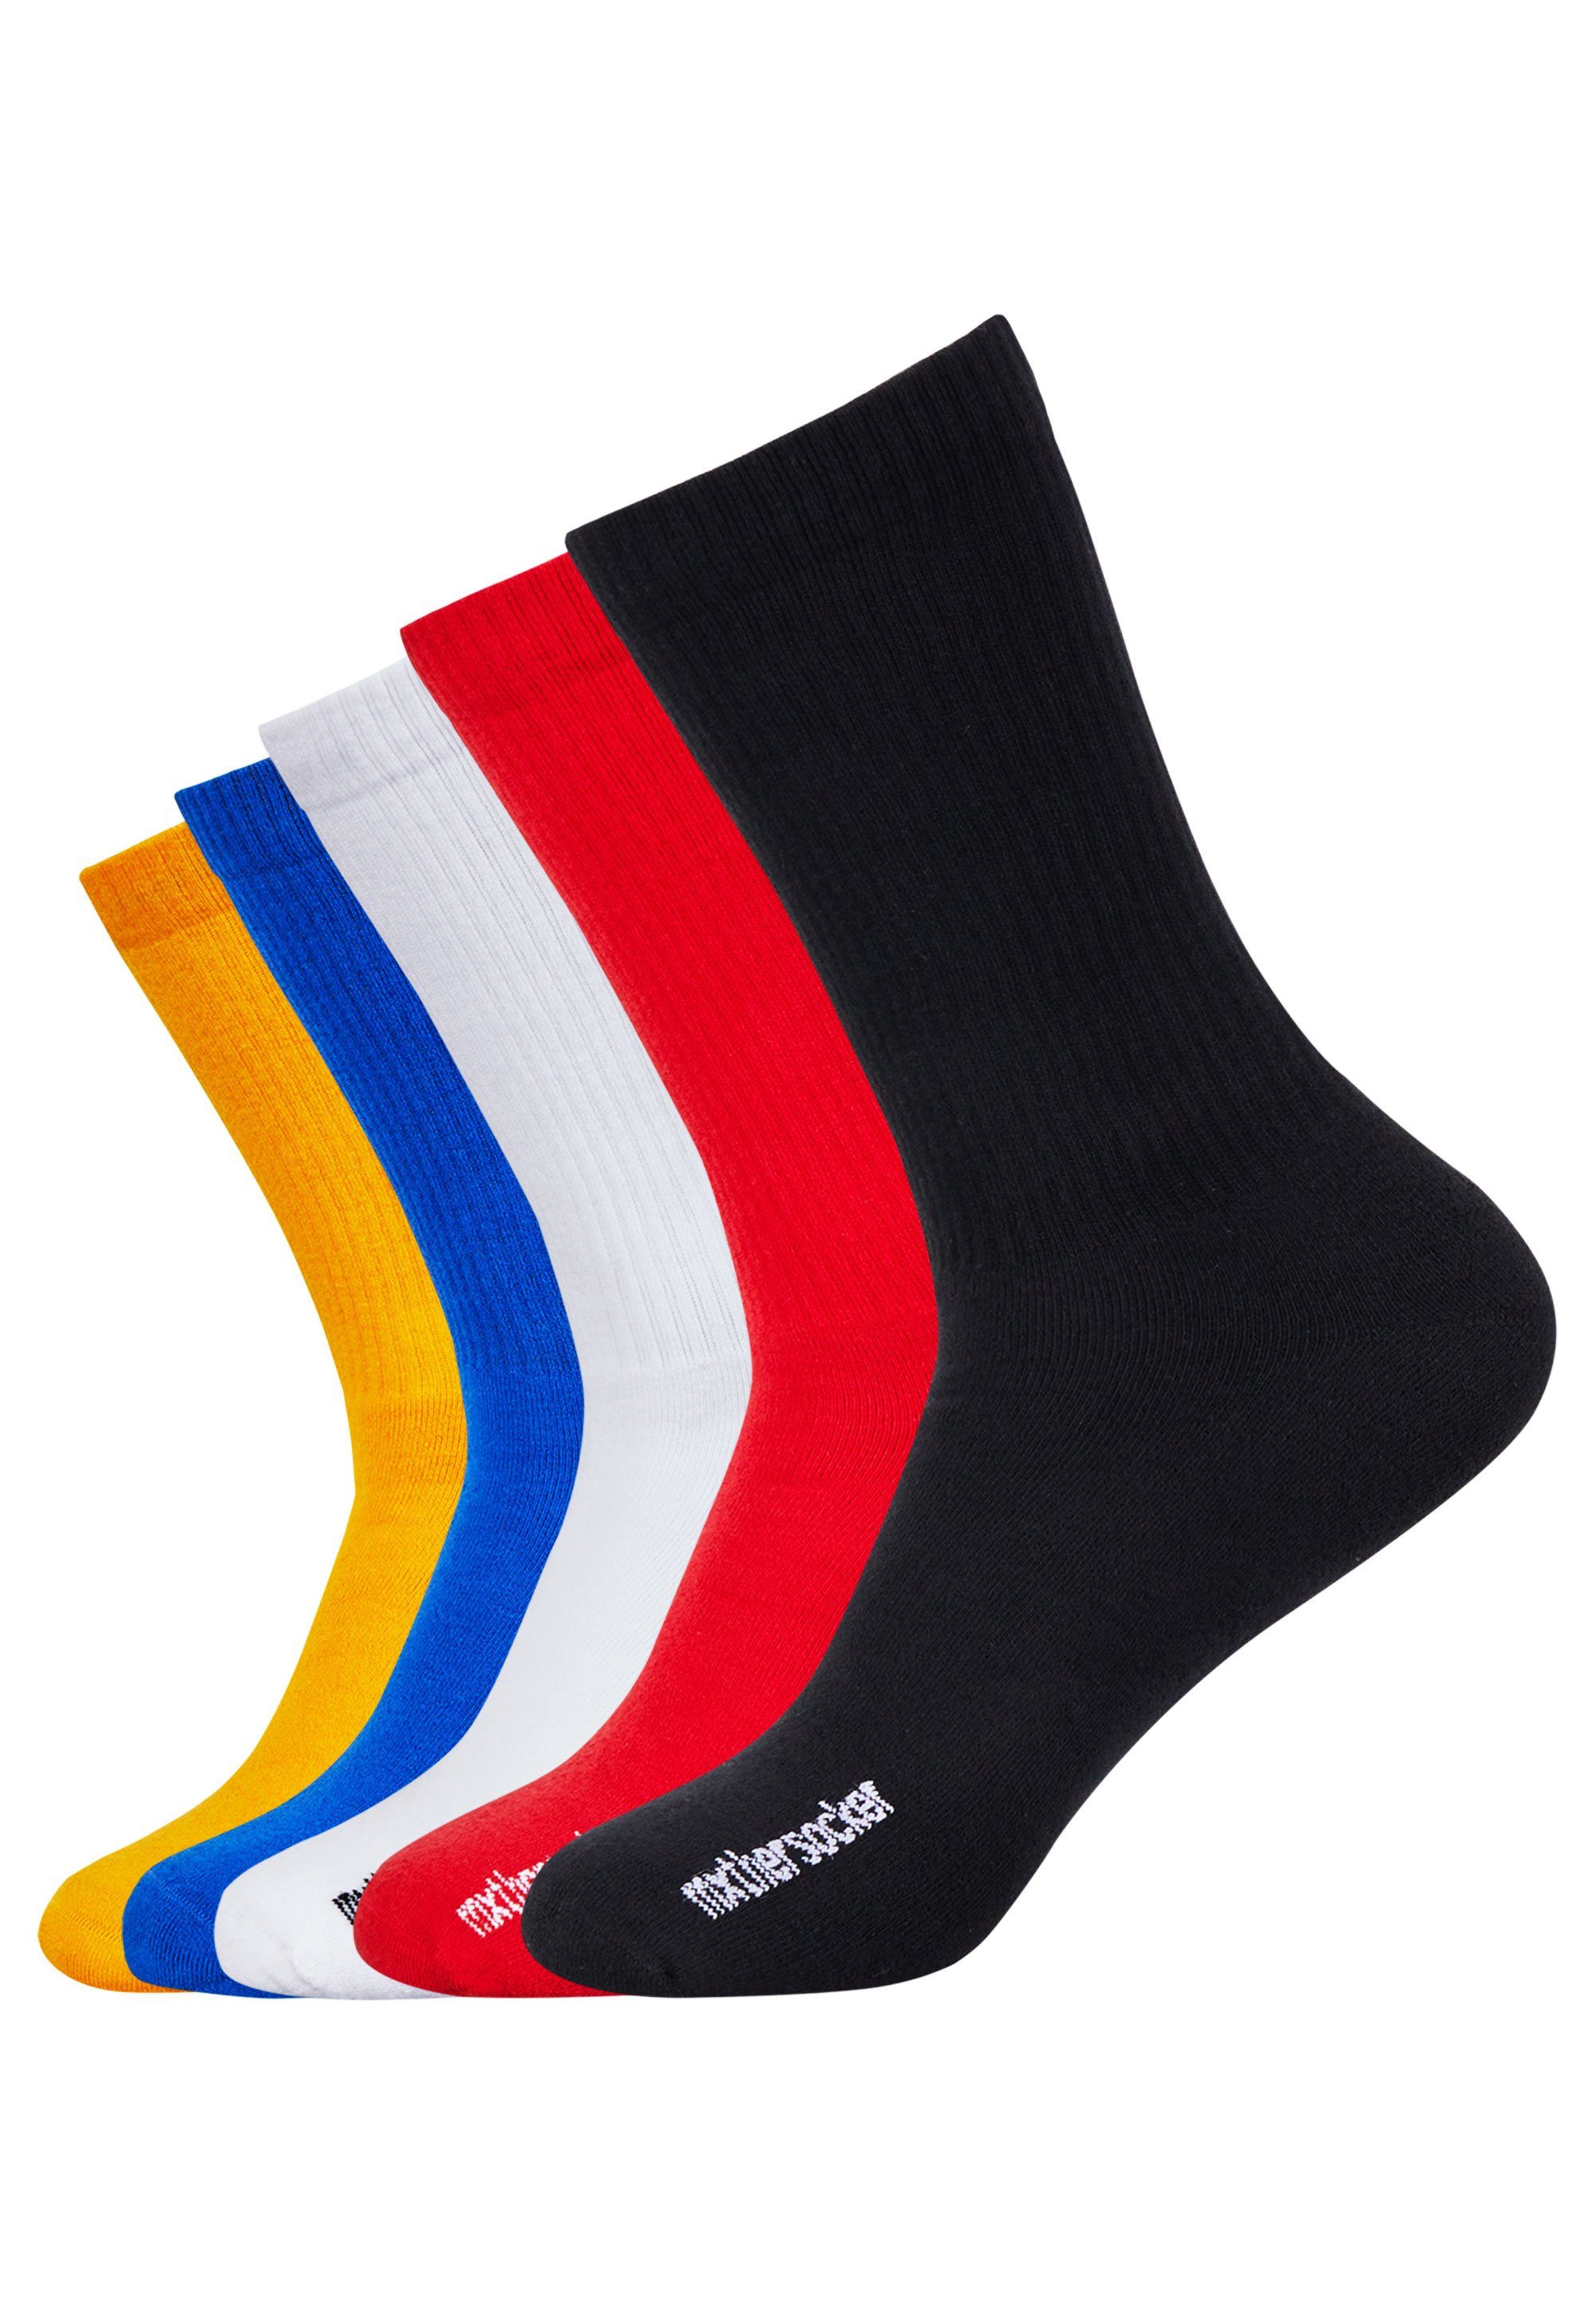 Mxthersocker Socken (5-Paar) in modernen Farben